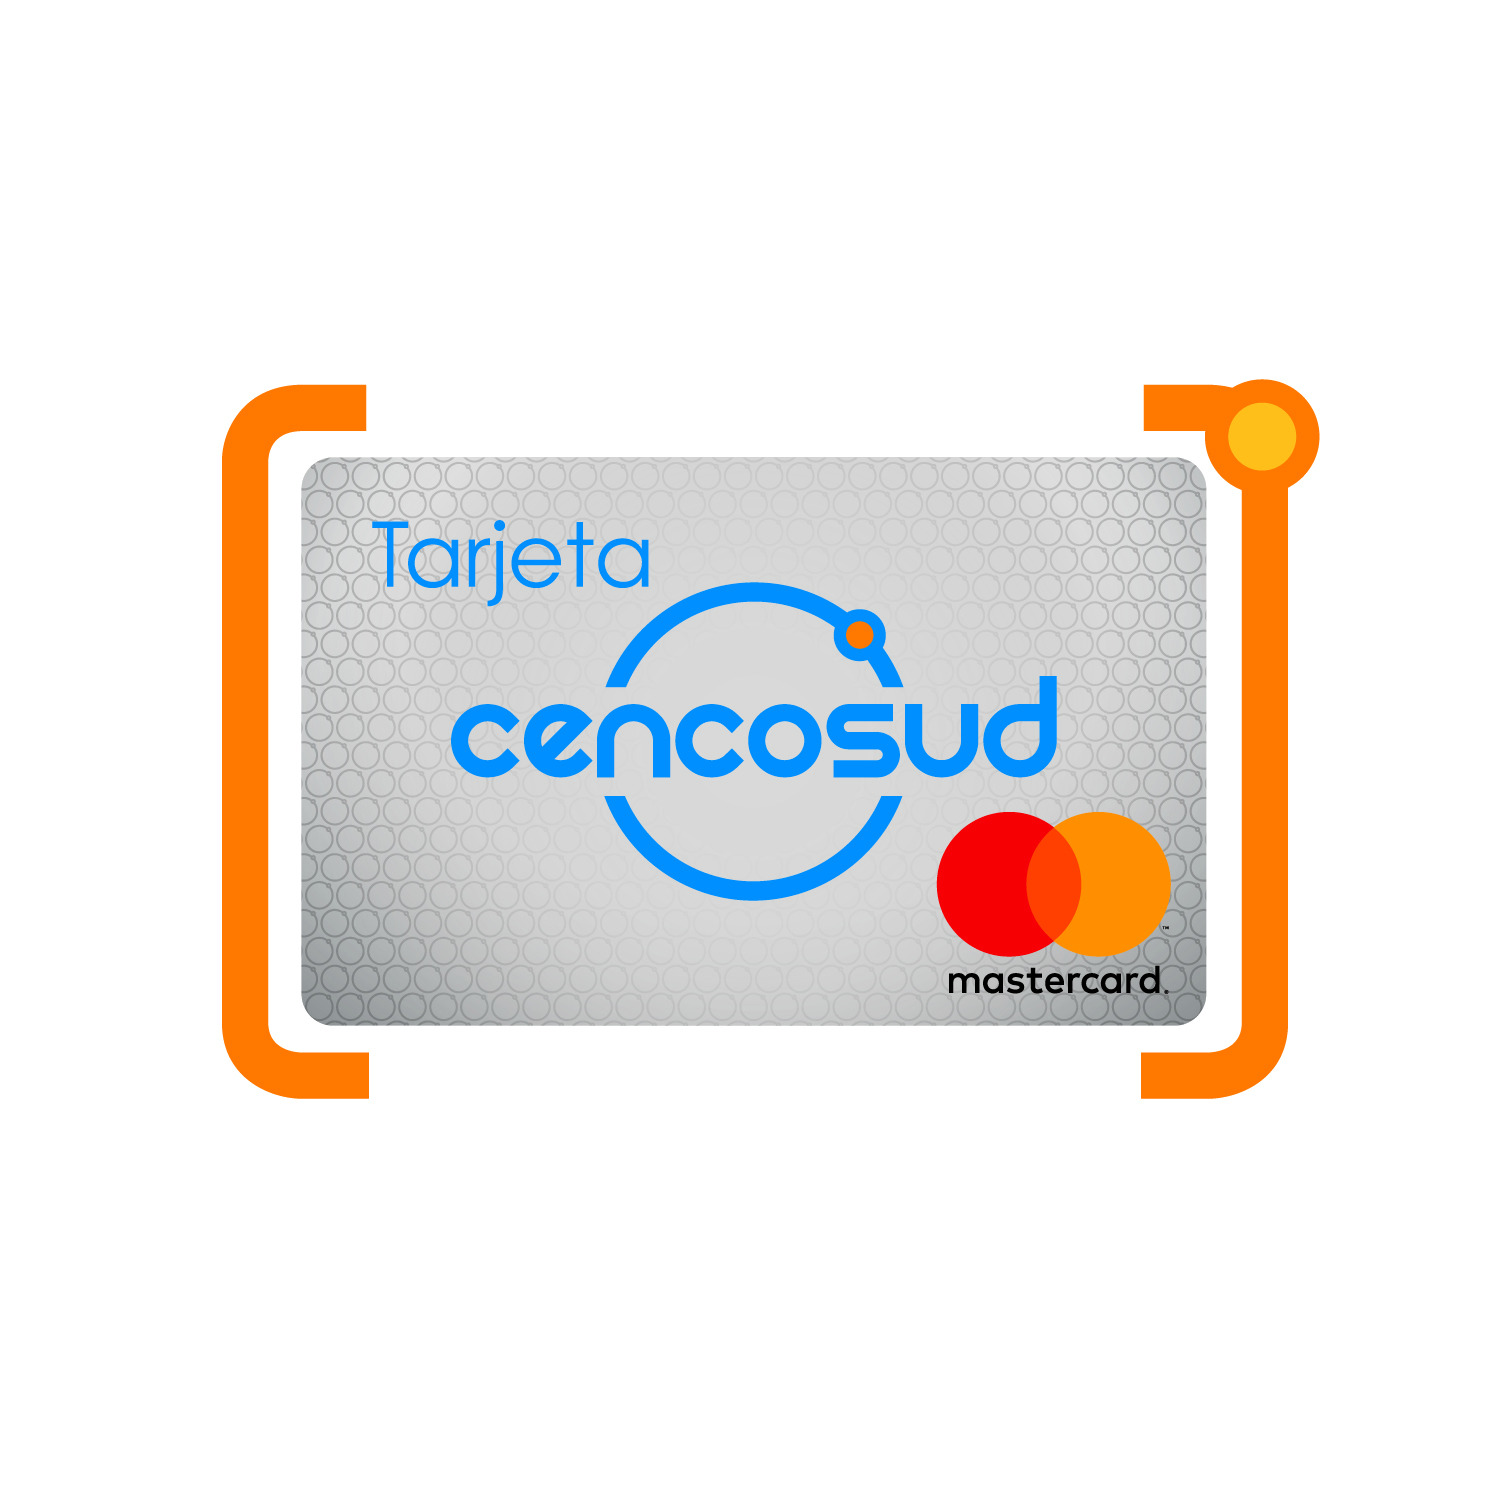 Logotipo Tarjeta Cencosud